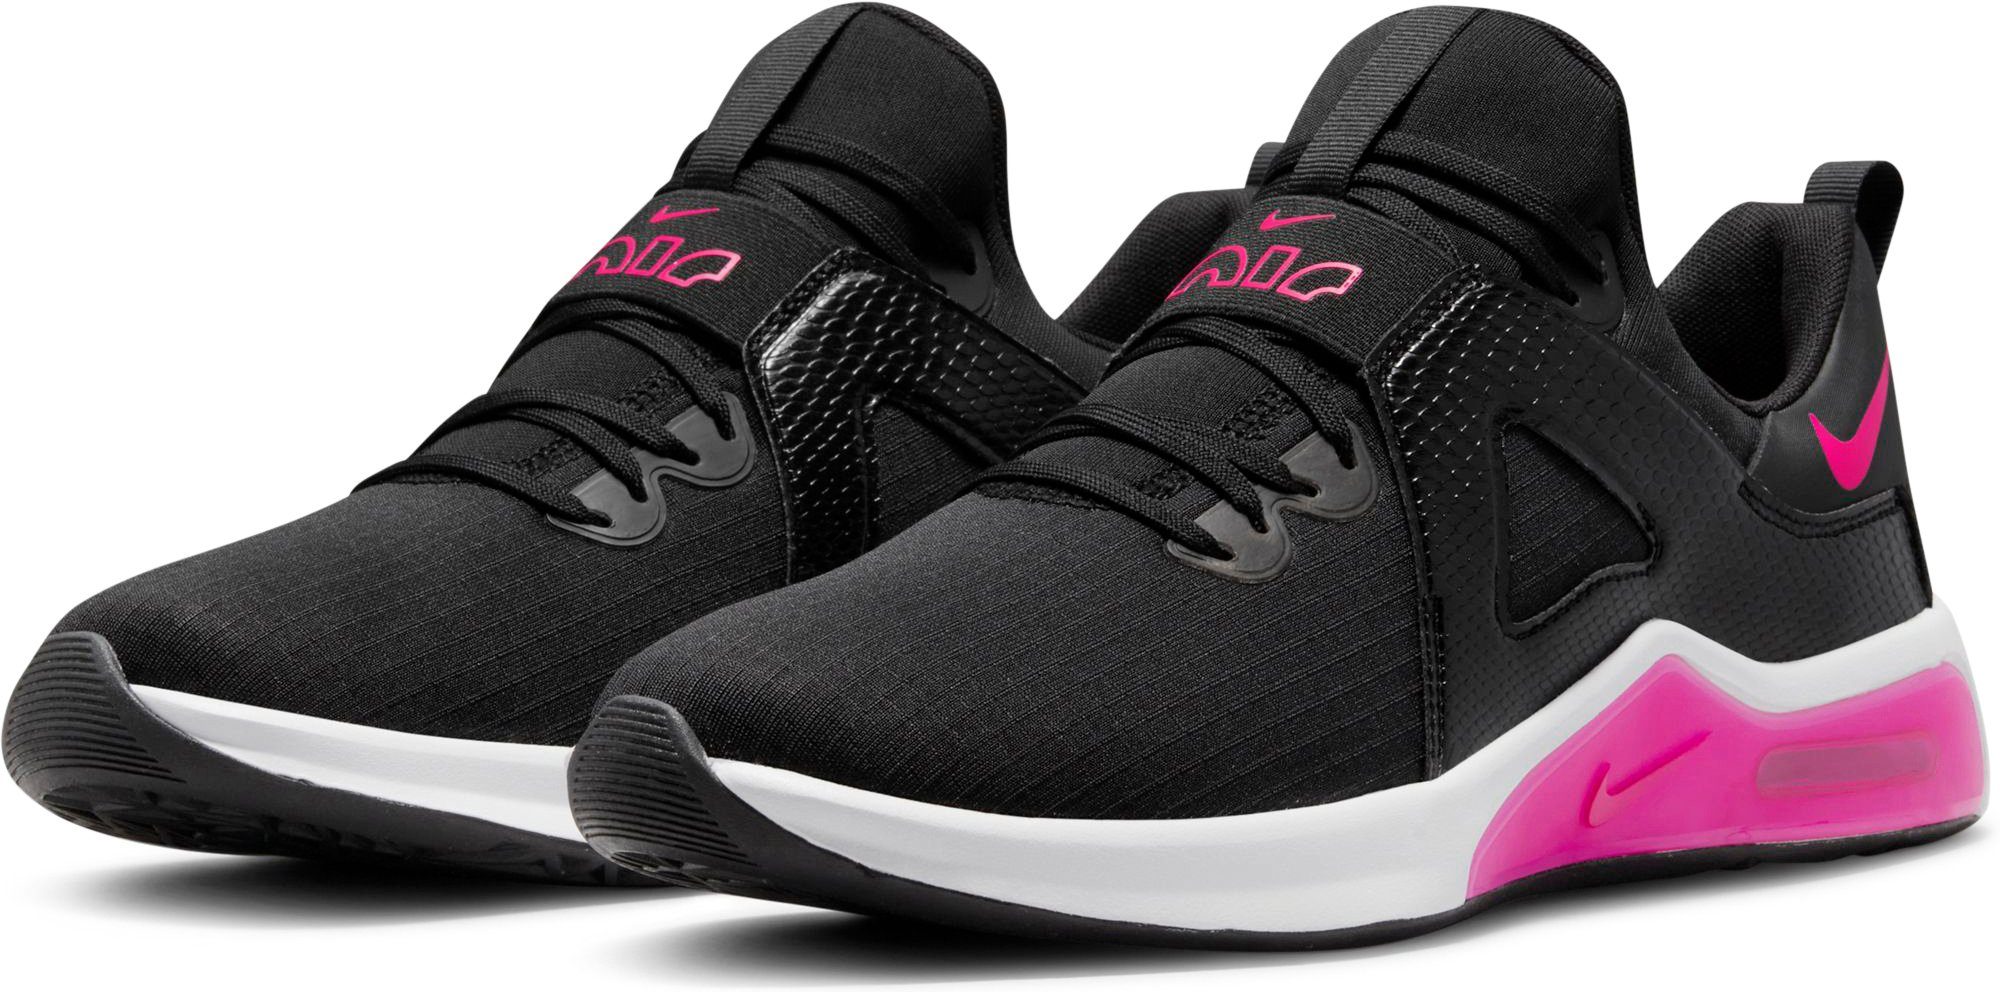 Nike Air Max Damen in schwarz online kaufen | OTTO